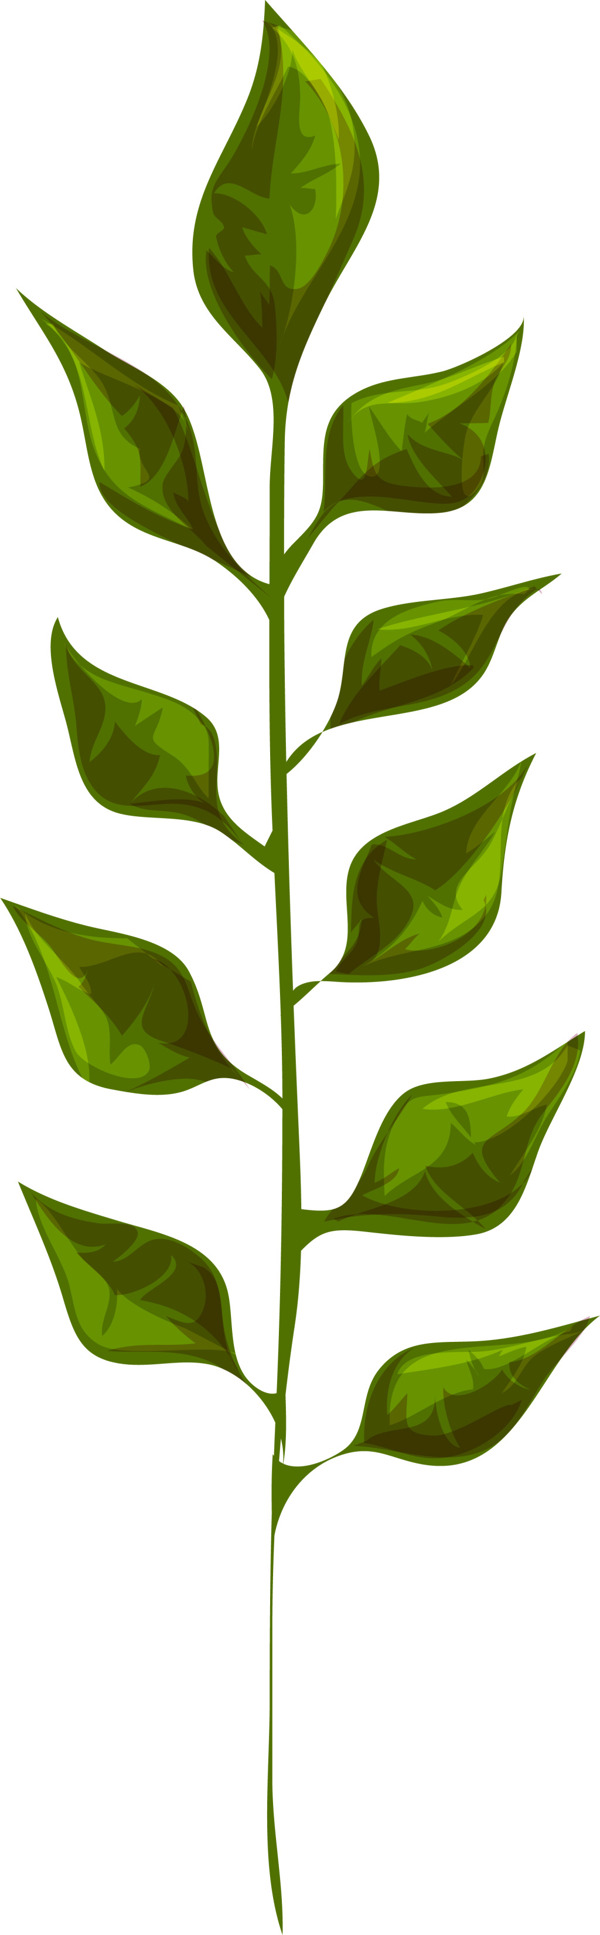 绿色叶子卡通植物矢量素材